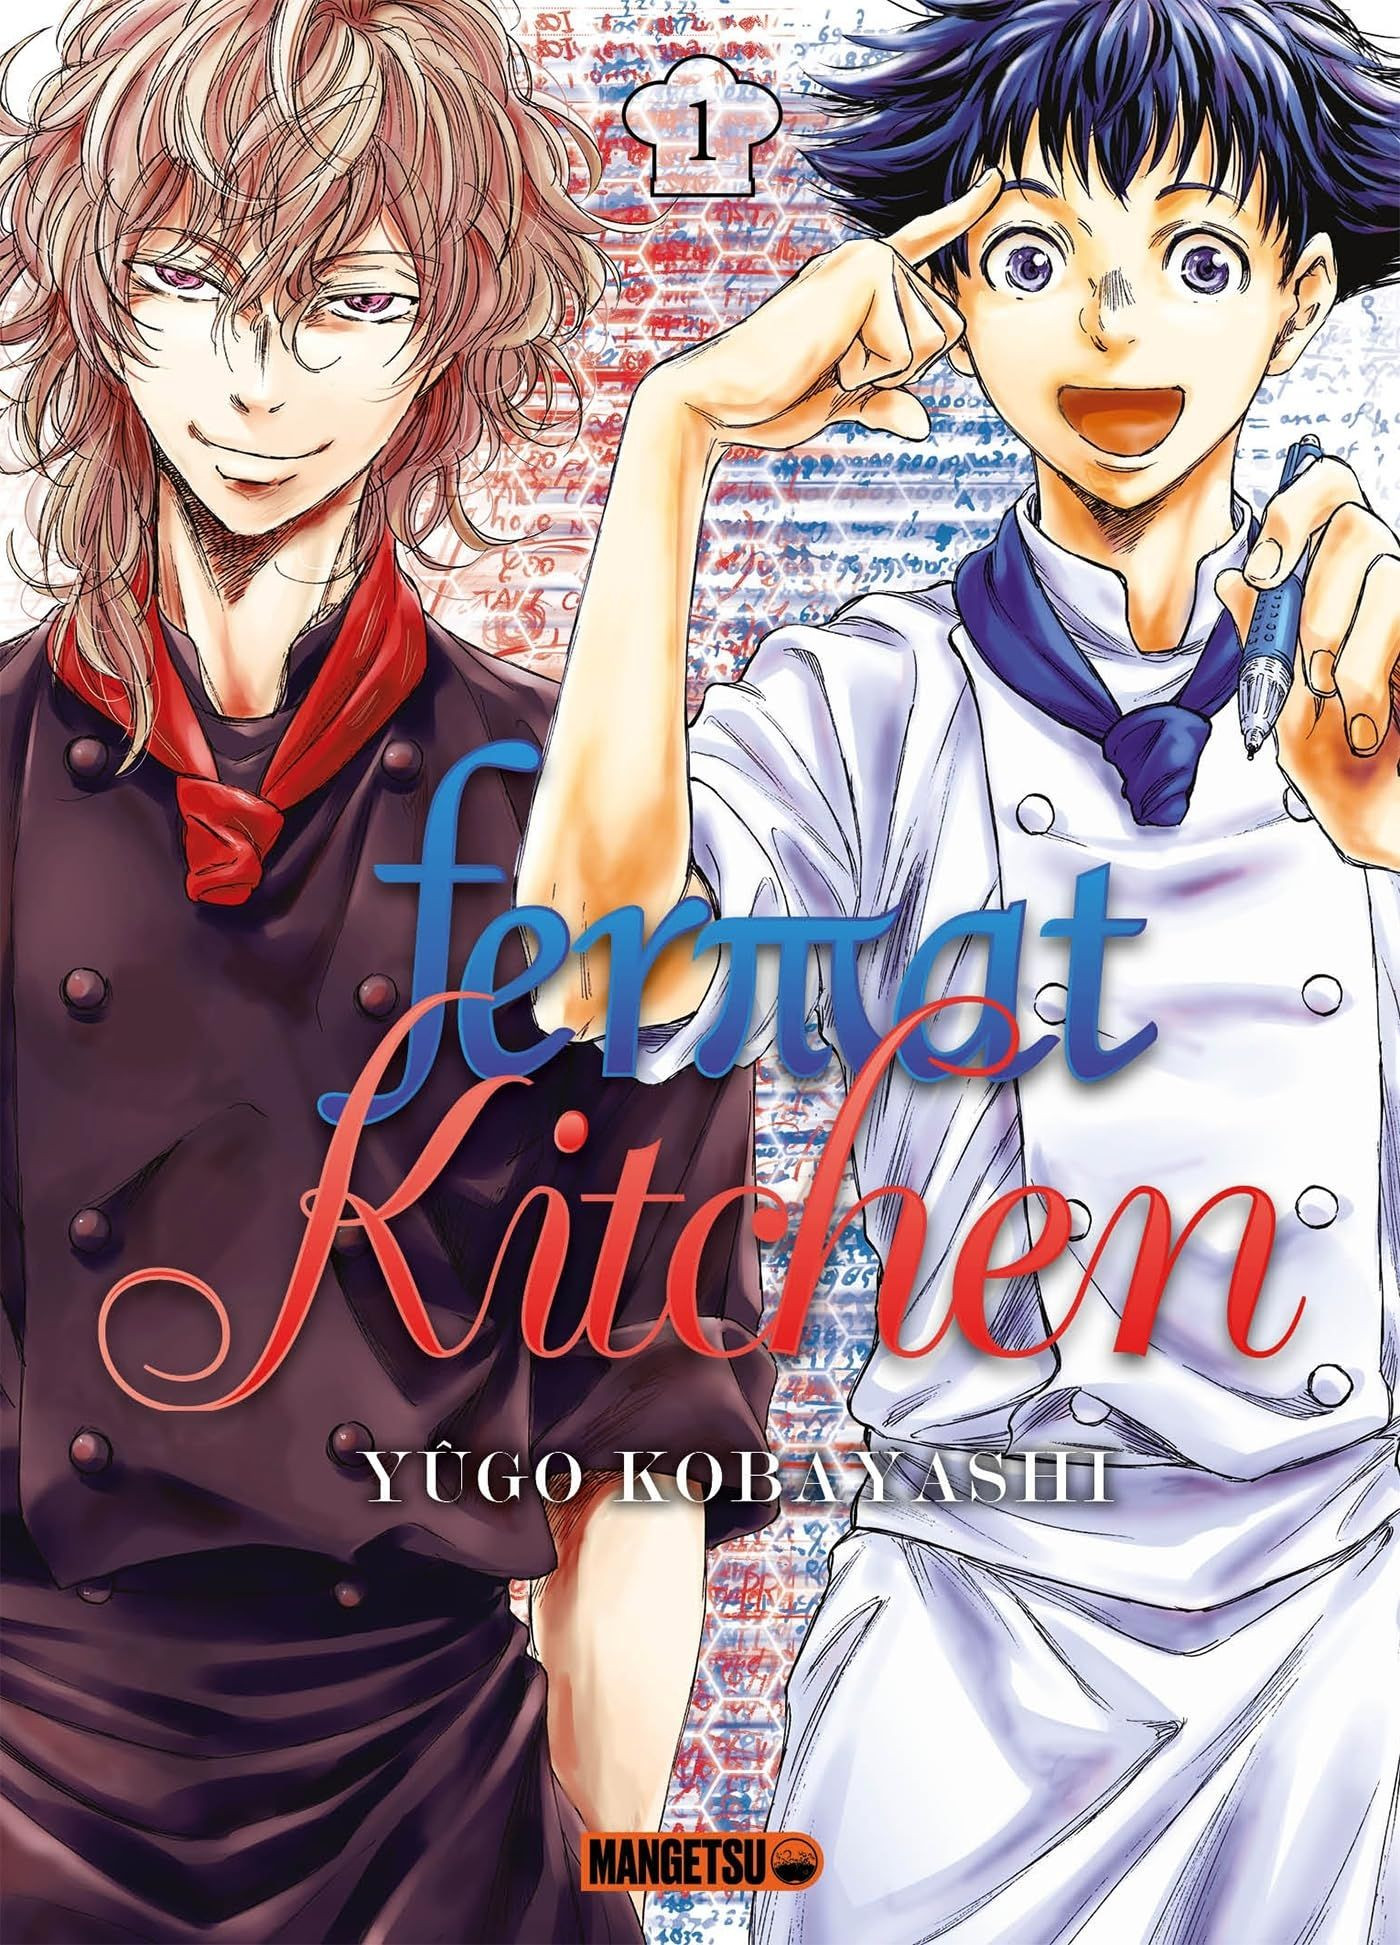 Le manga Fermat Kitchen adapté en drama2